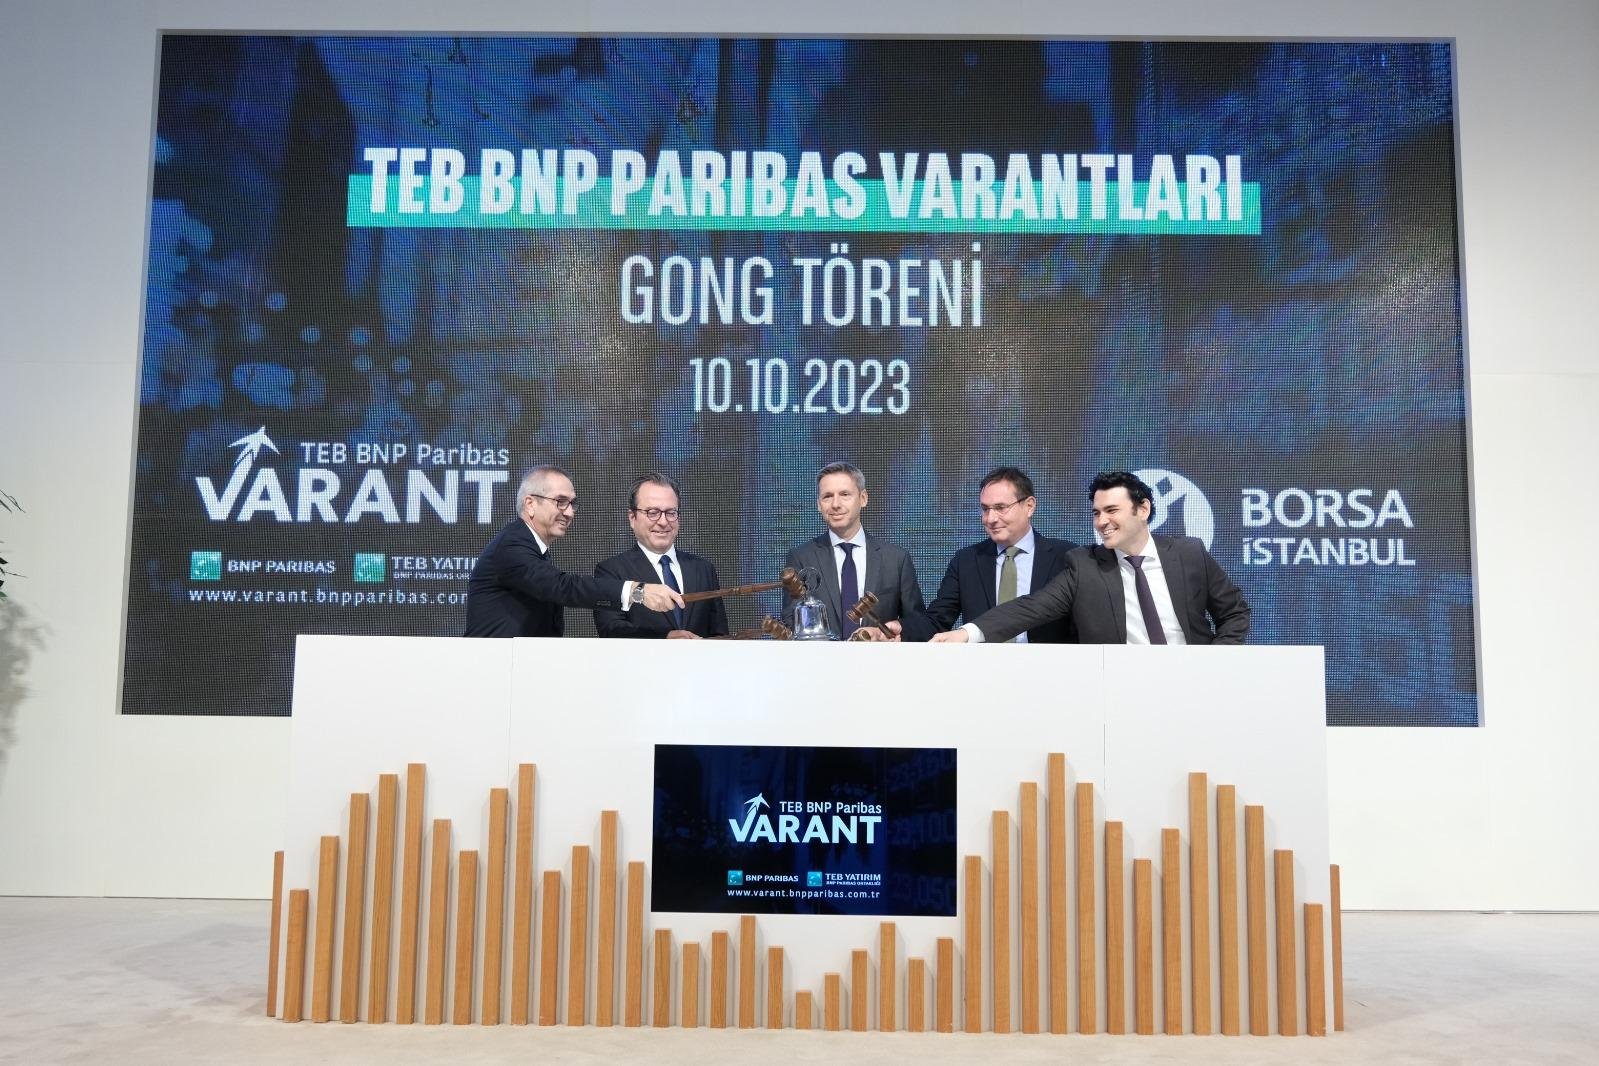 Borsa İstanbul’da gong TEB BNP Paribas Varantları için çaldı